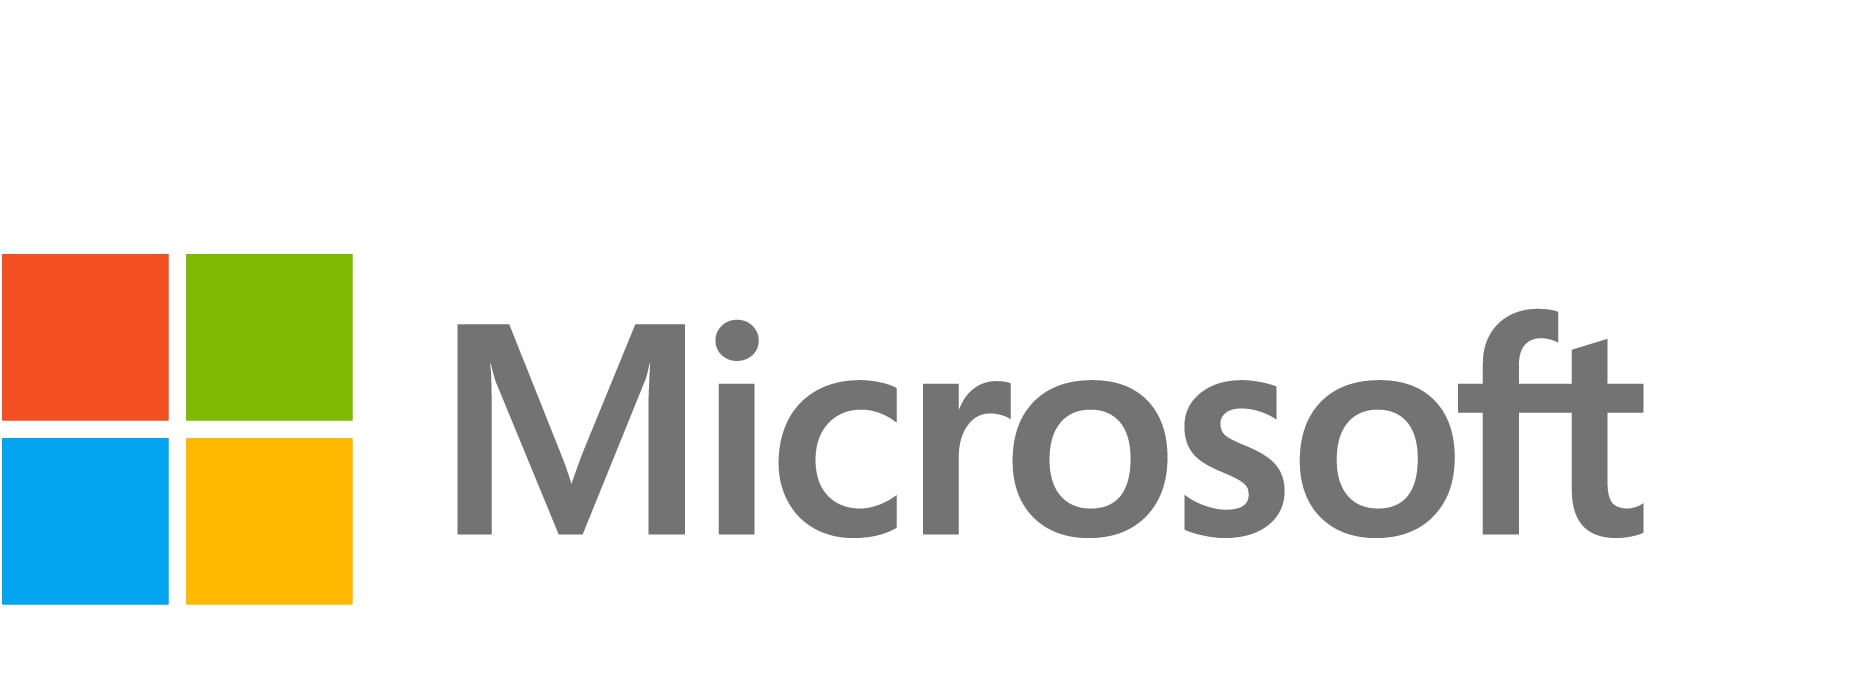 Microsoft Intune Enterprise App Management - subscription license (1 month)